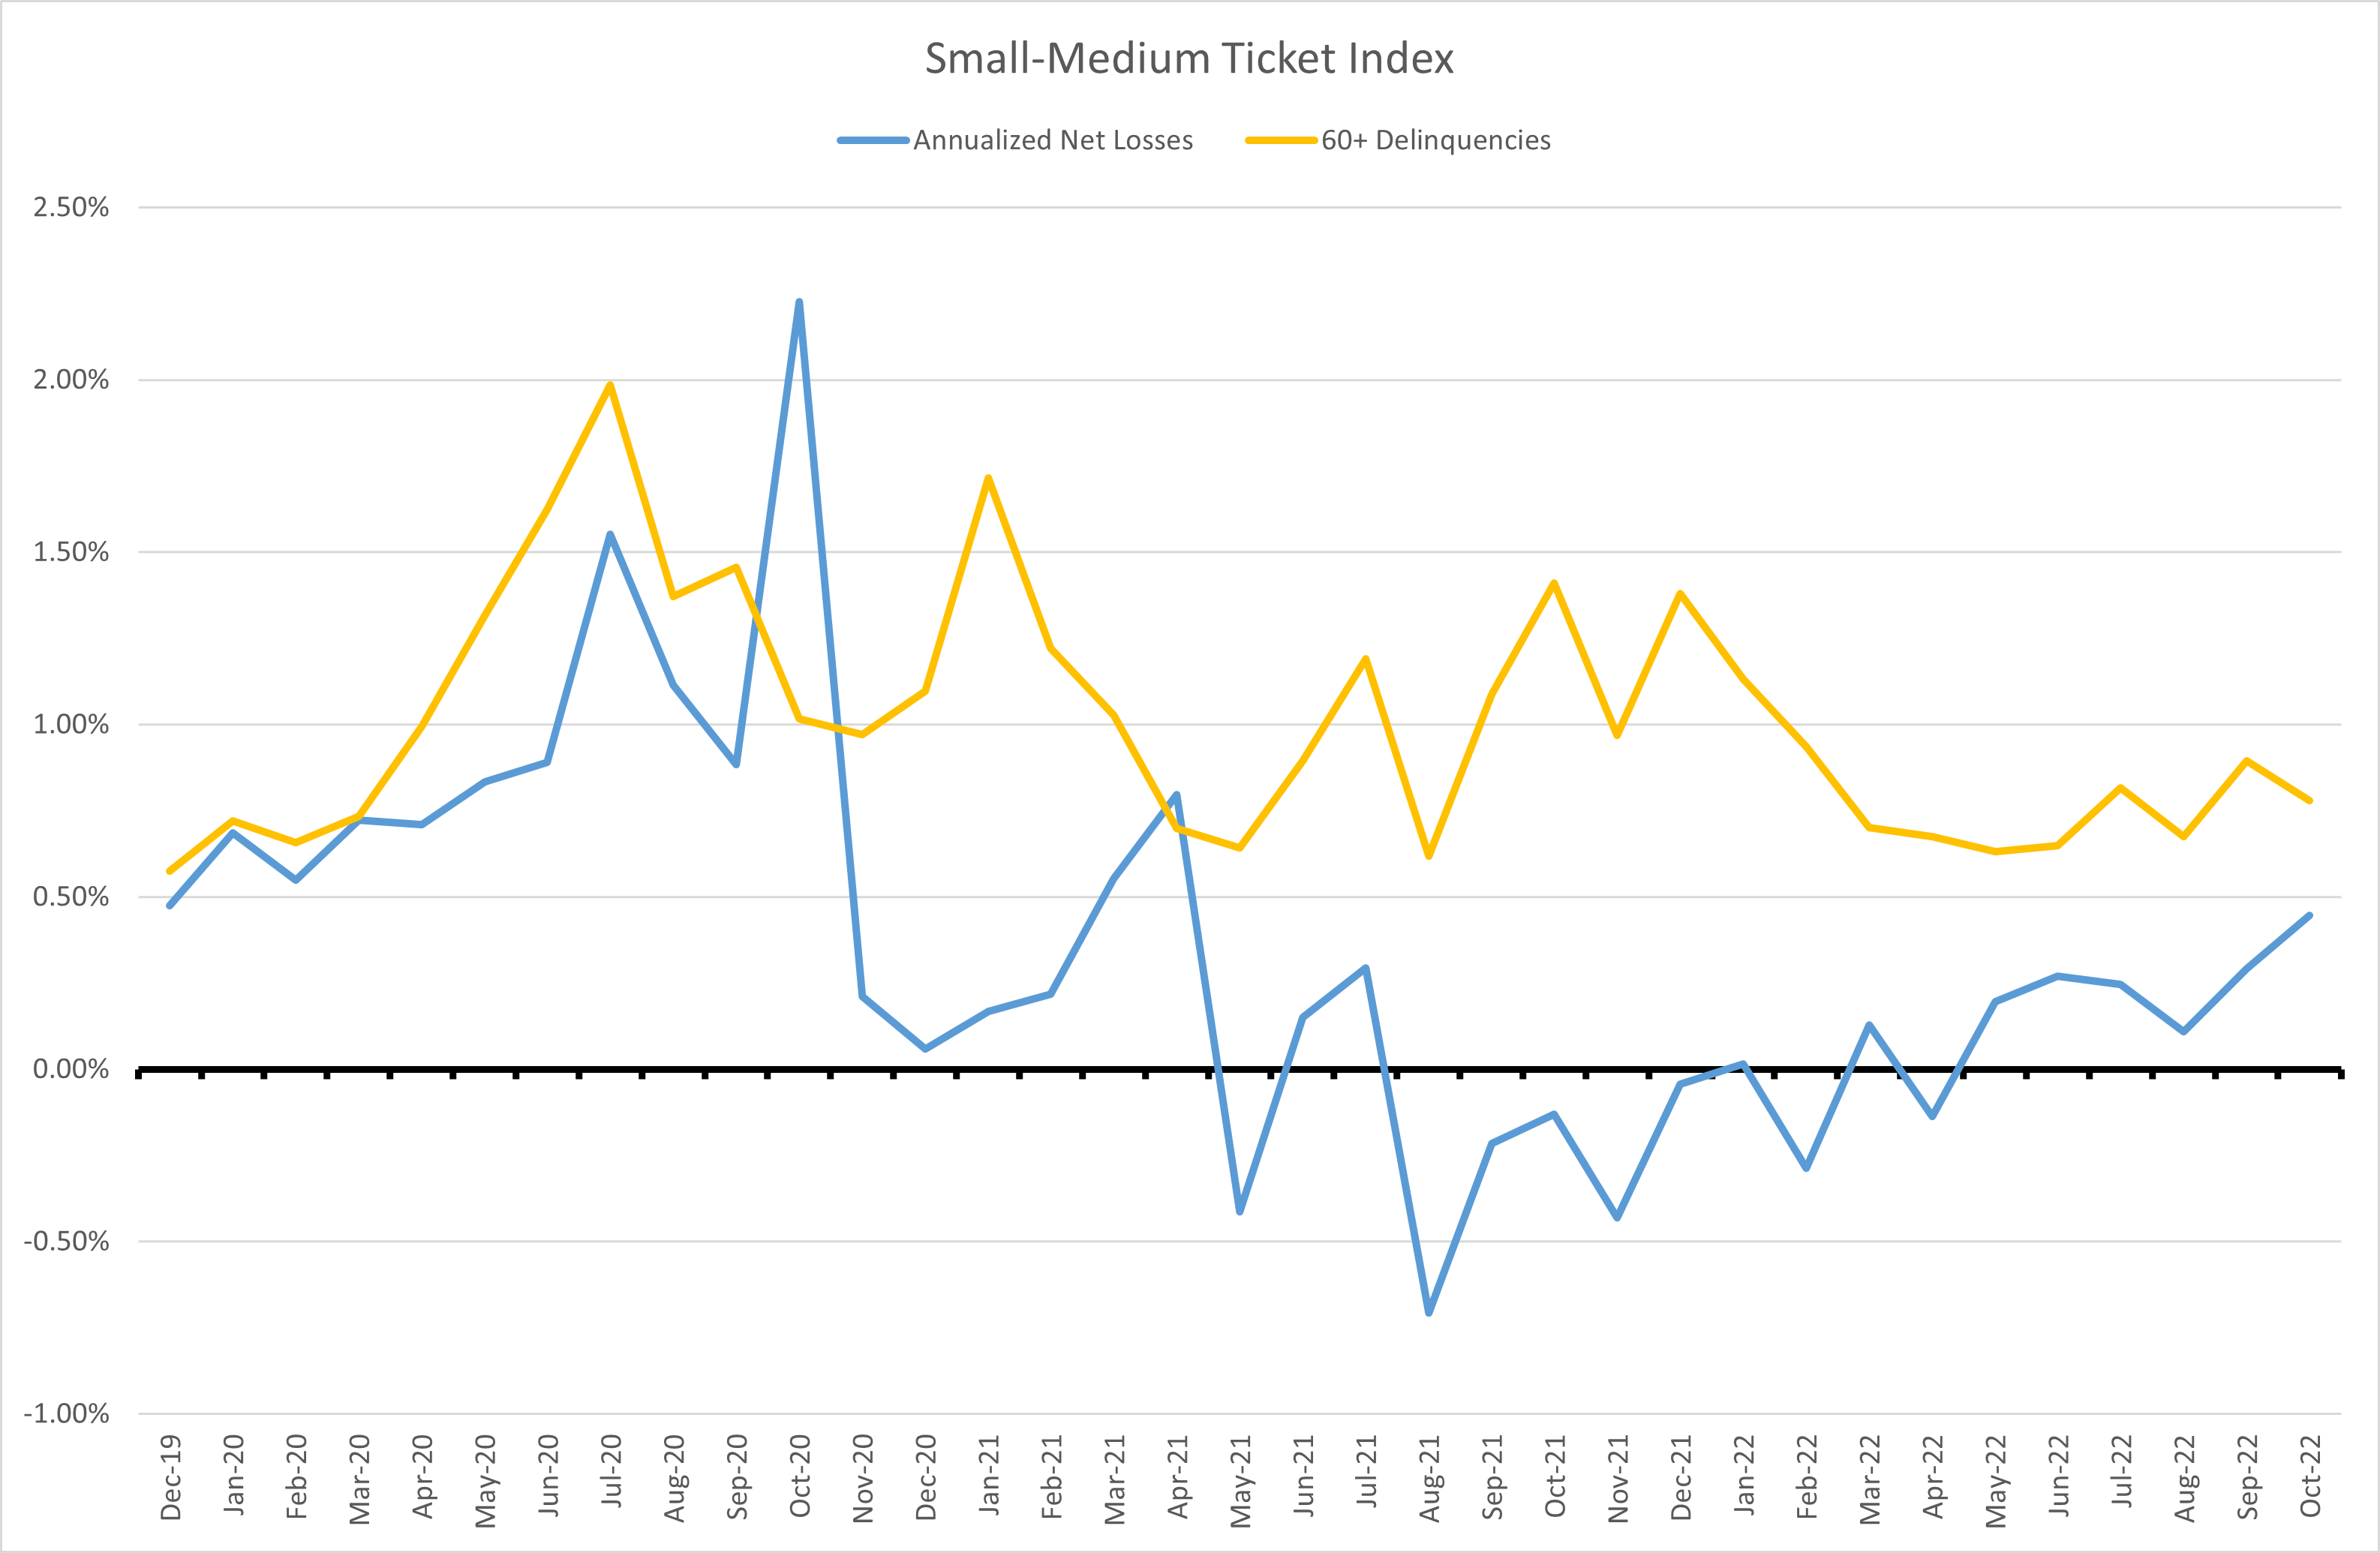 Small-Medium Equipment Index